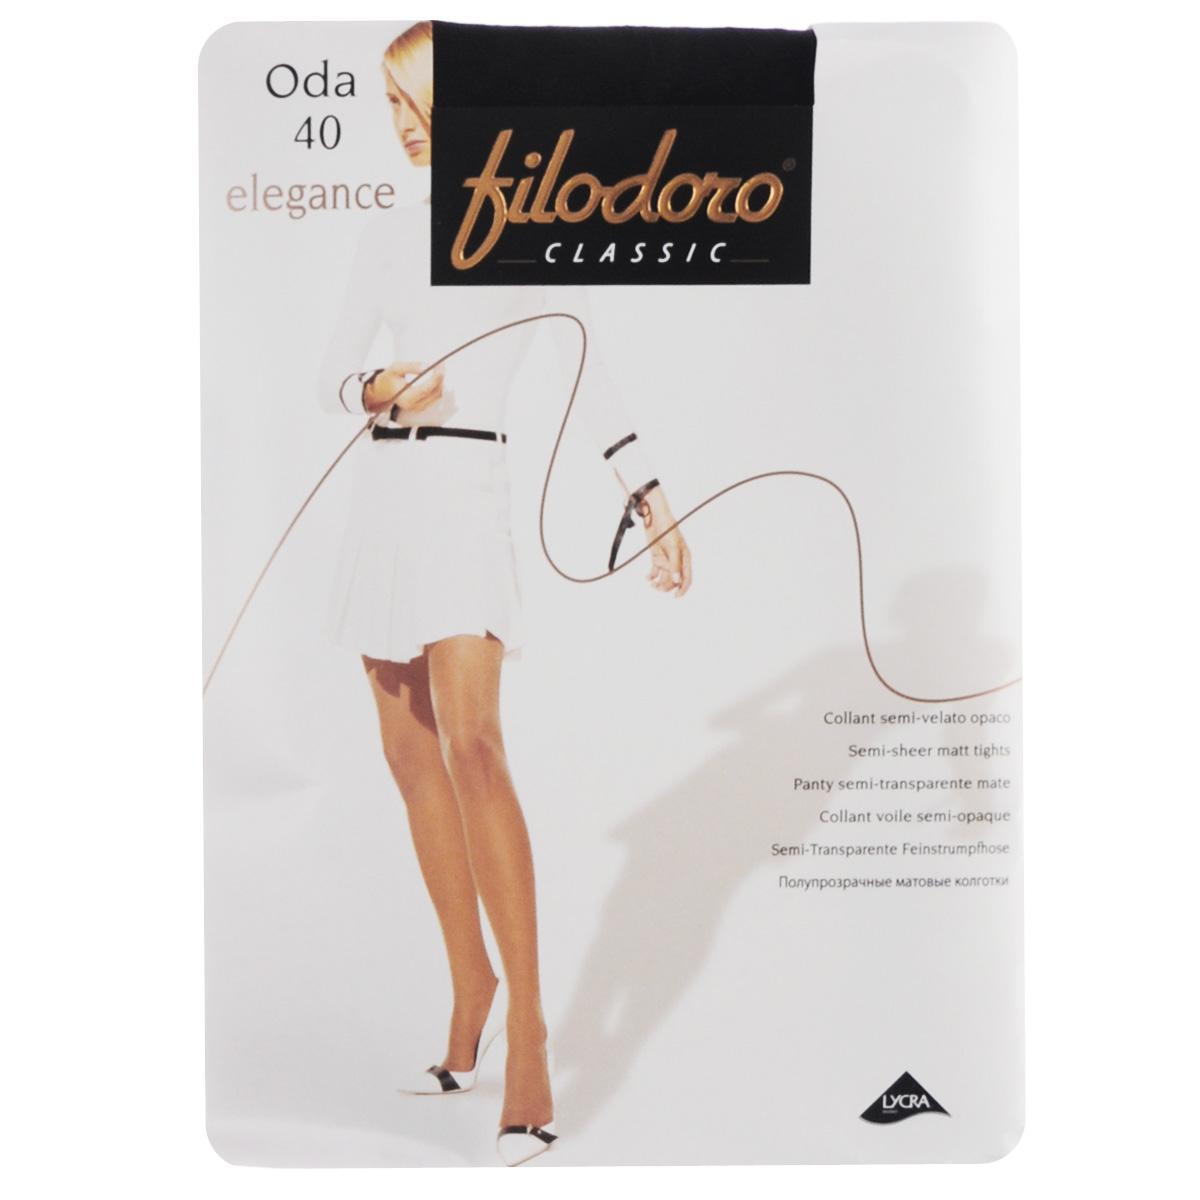 Колготки женские Filodoro Classic Oda 40 Elegance, цвет: Nero (черный). SSP-016658. Размер 3 (M)